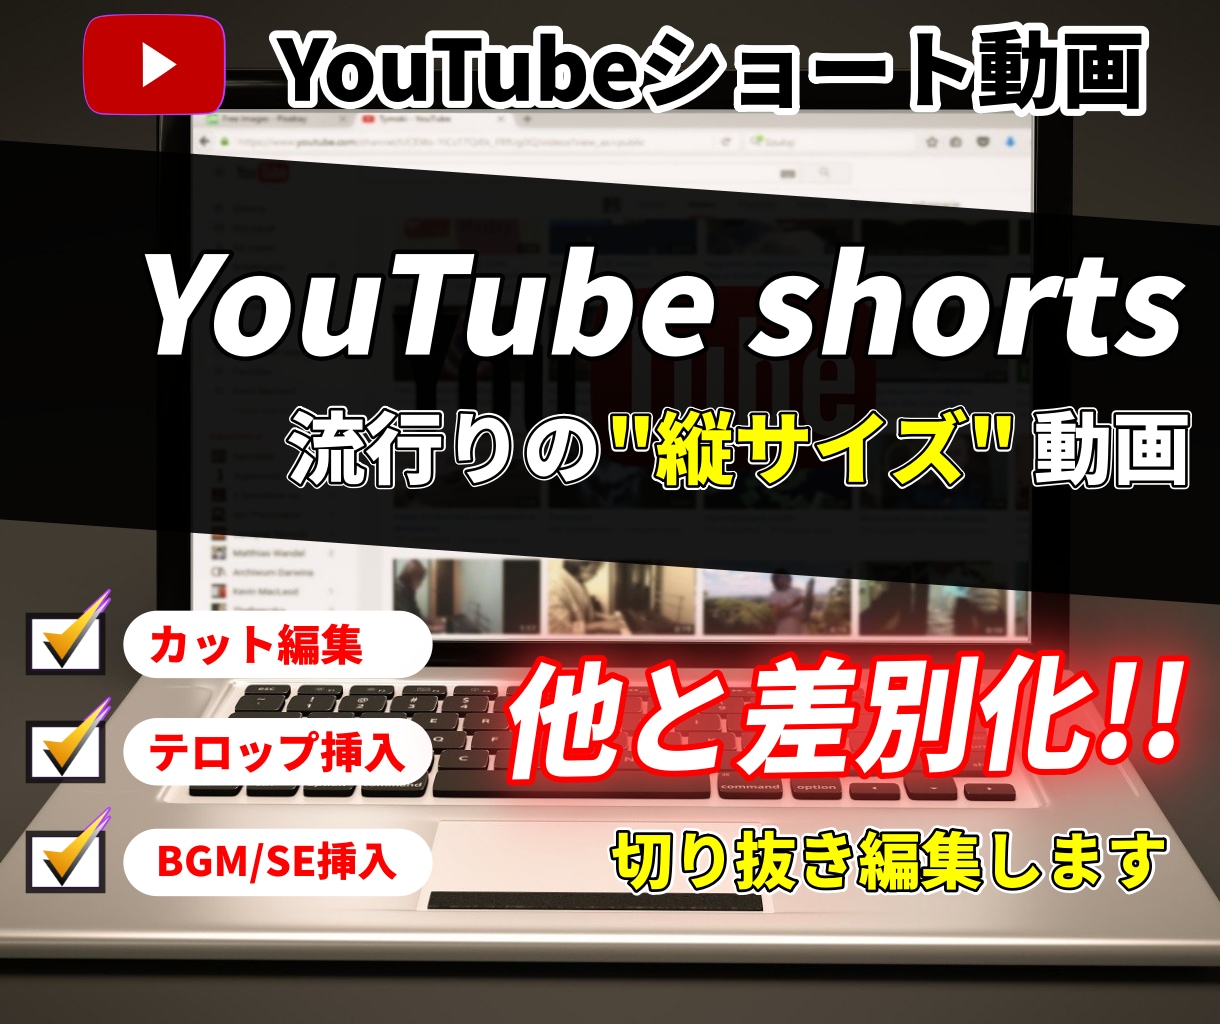 YouTube shortsの切り抜きを編集します 流行りのYouTubeショート縦動画60秒以内を編集します イメージ1